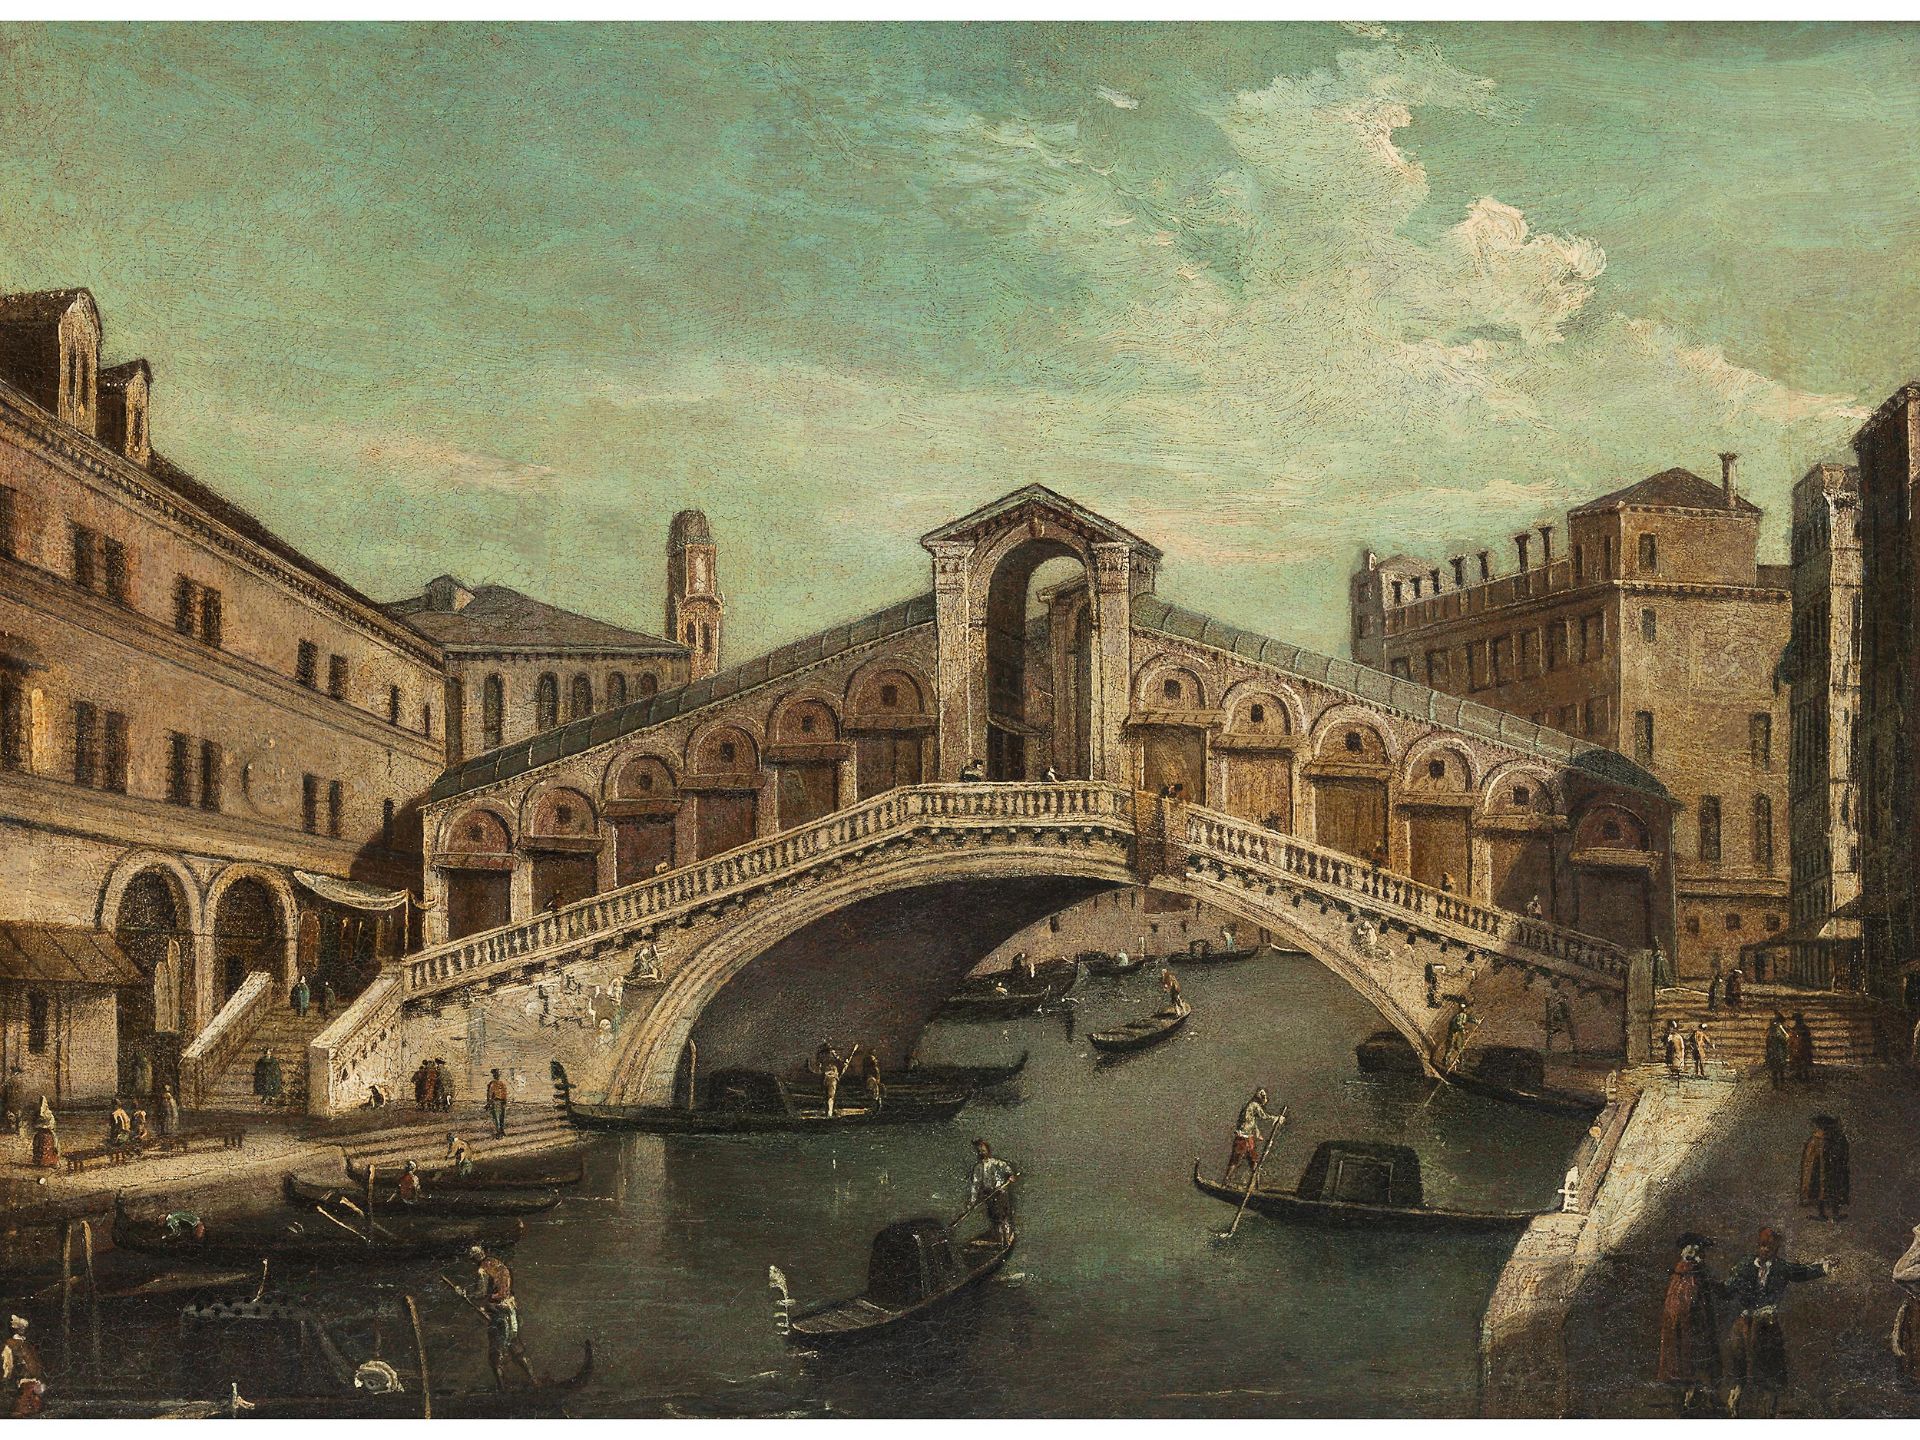 Venezianischer Maler des ausgehenden 18. Jahrhunderts